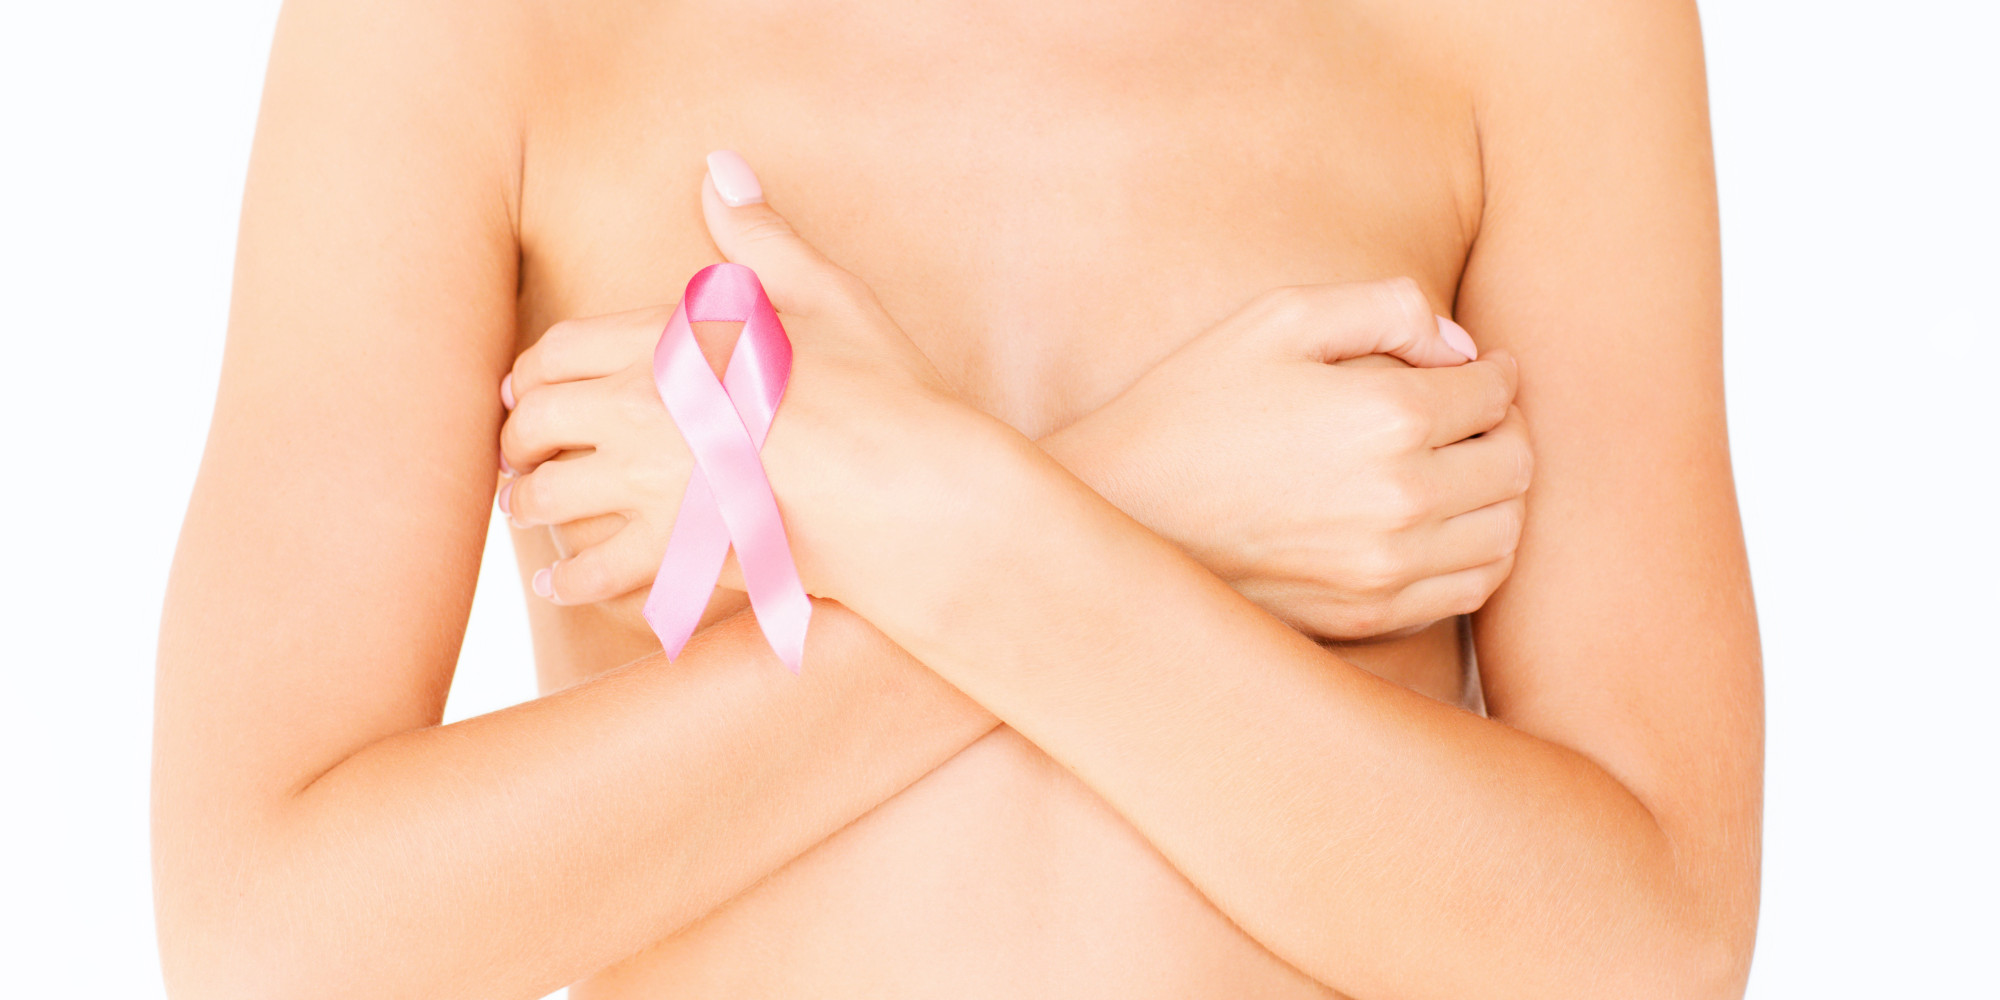 Ung thư vú là căn bệnh nguy hiểm nhất hiện nay